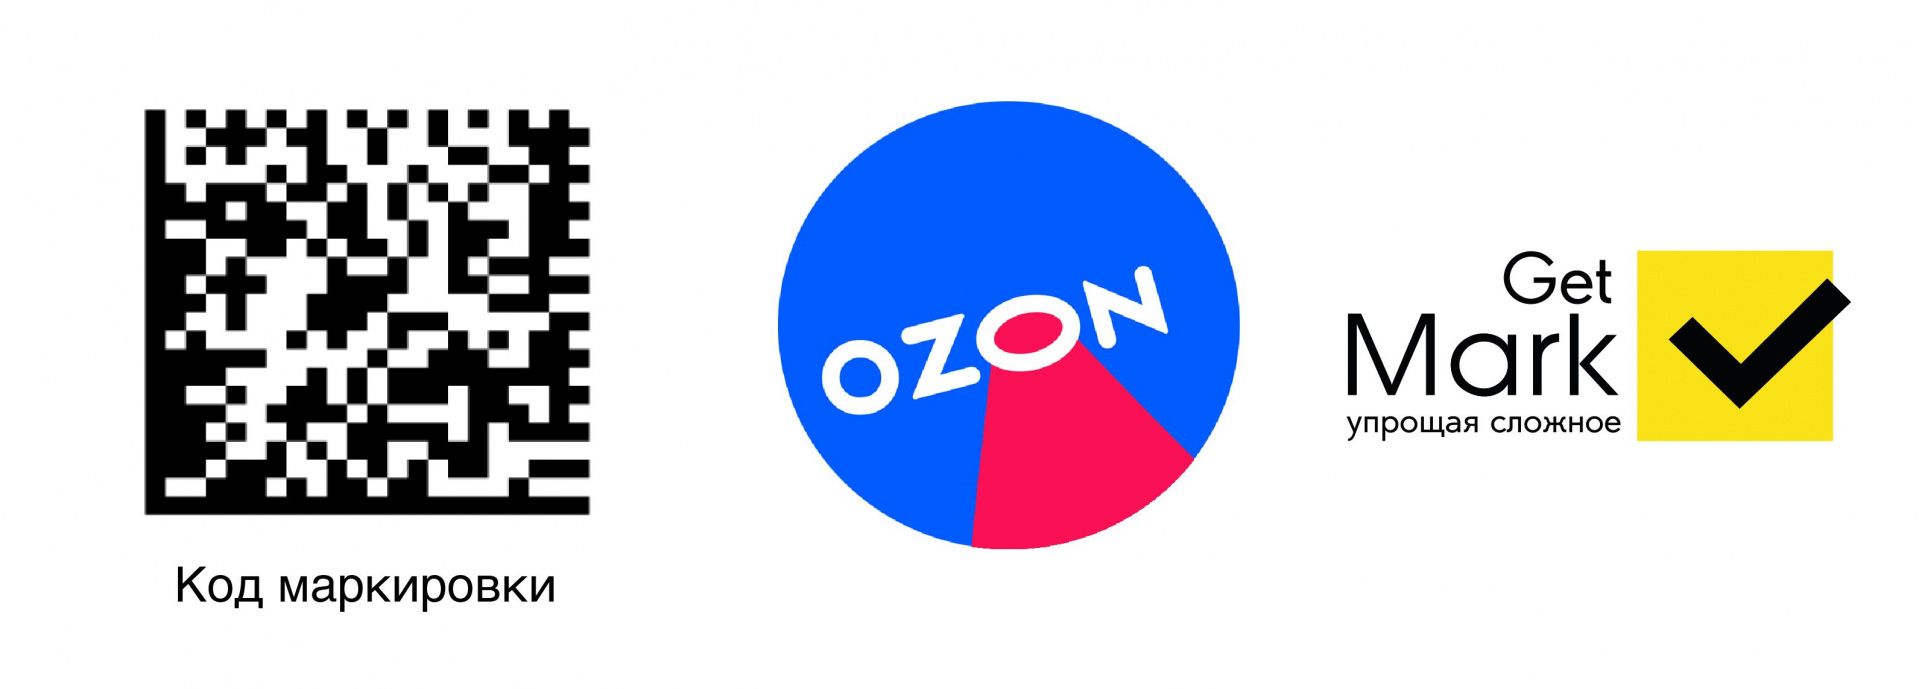 Работа с маркированным товаром на Ozon. Вывод и ввод в оборот маркированного товара на Ozon. Заполнение УПД для работы на Ozon.